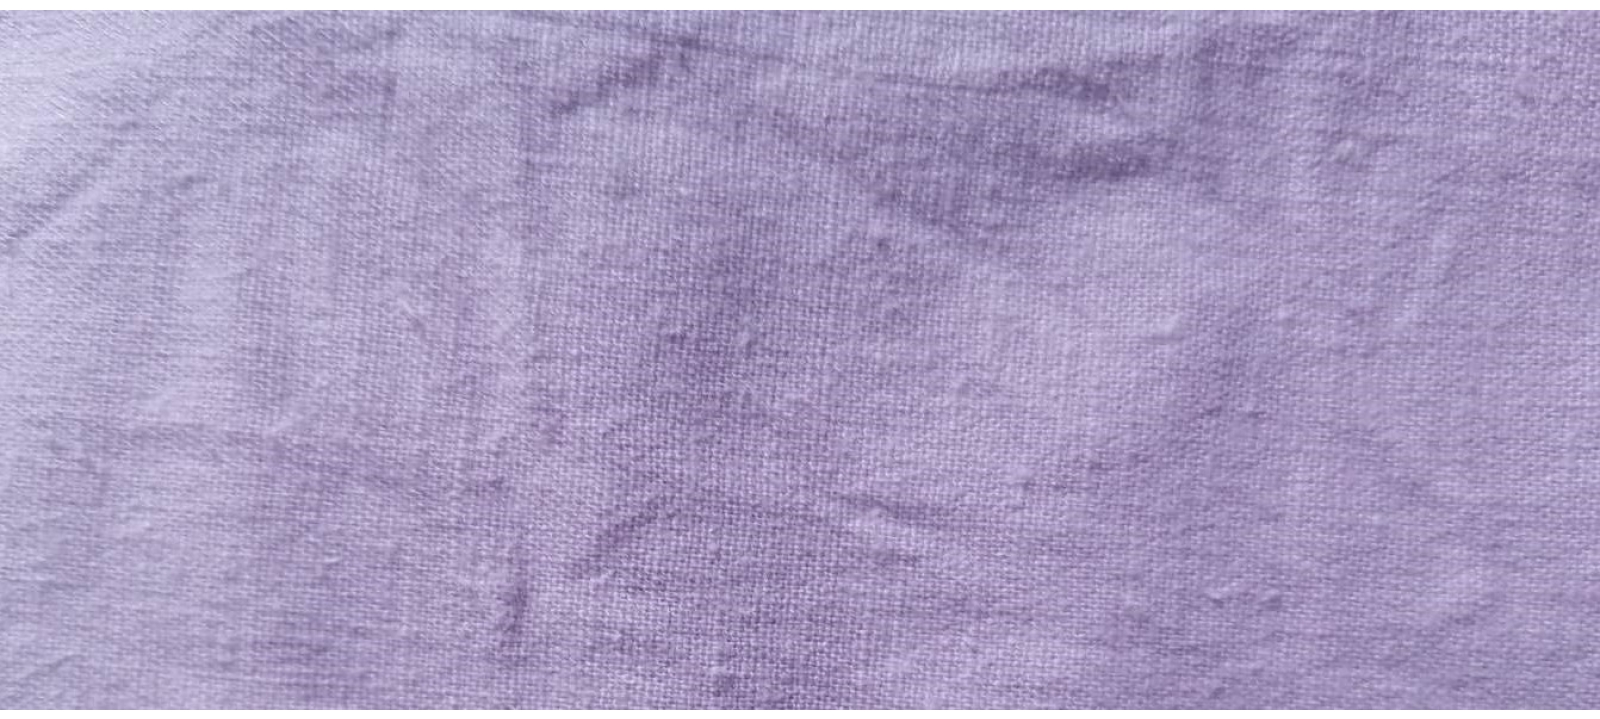 HOCL1658 hemp/organic cotton fabric